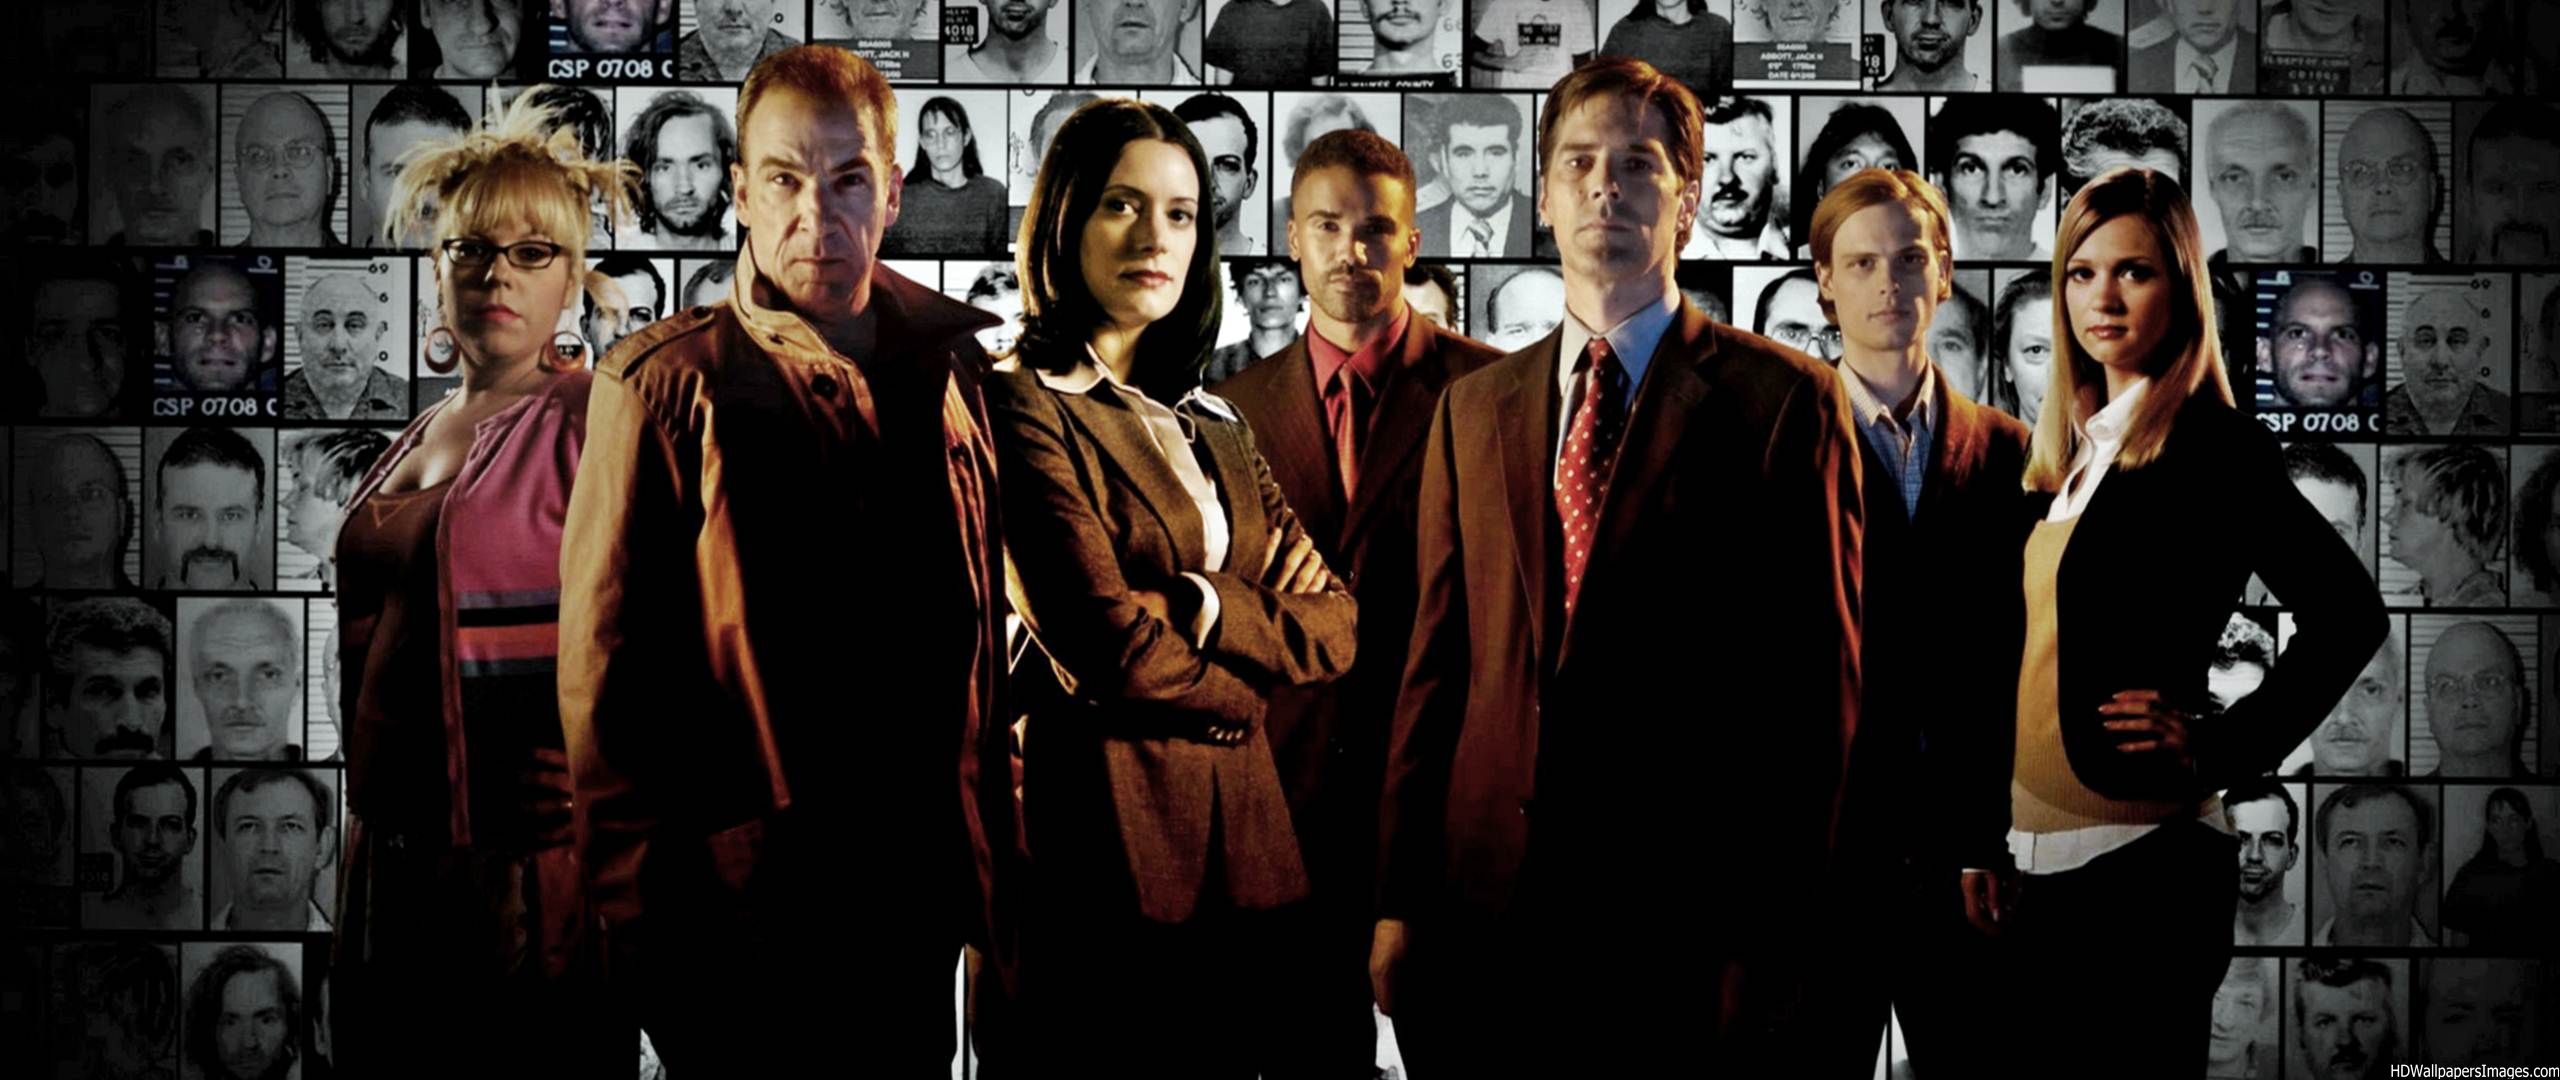 Criminal Minds - Criminal Minds Intro Background , HD Wallpaper & Backgrounds